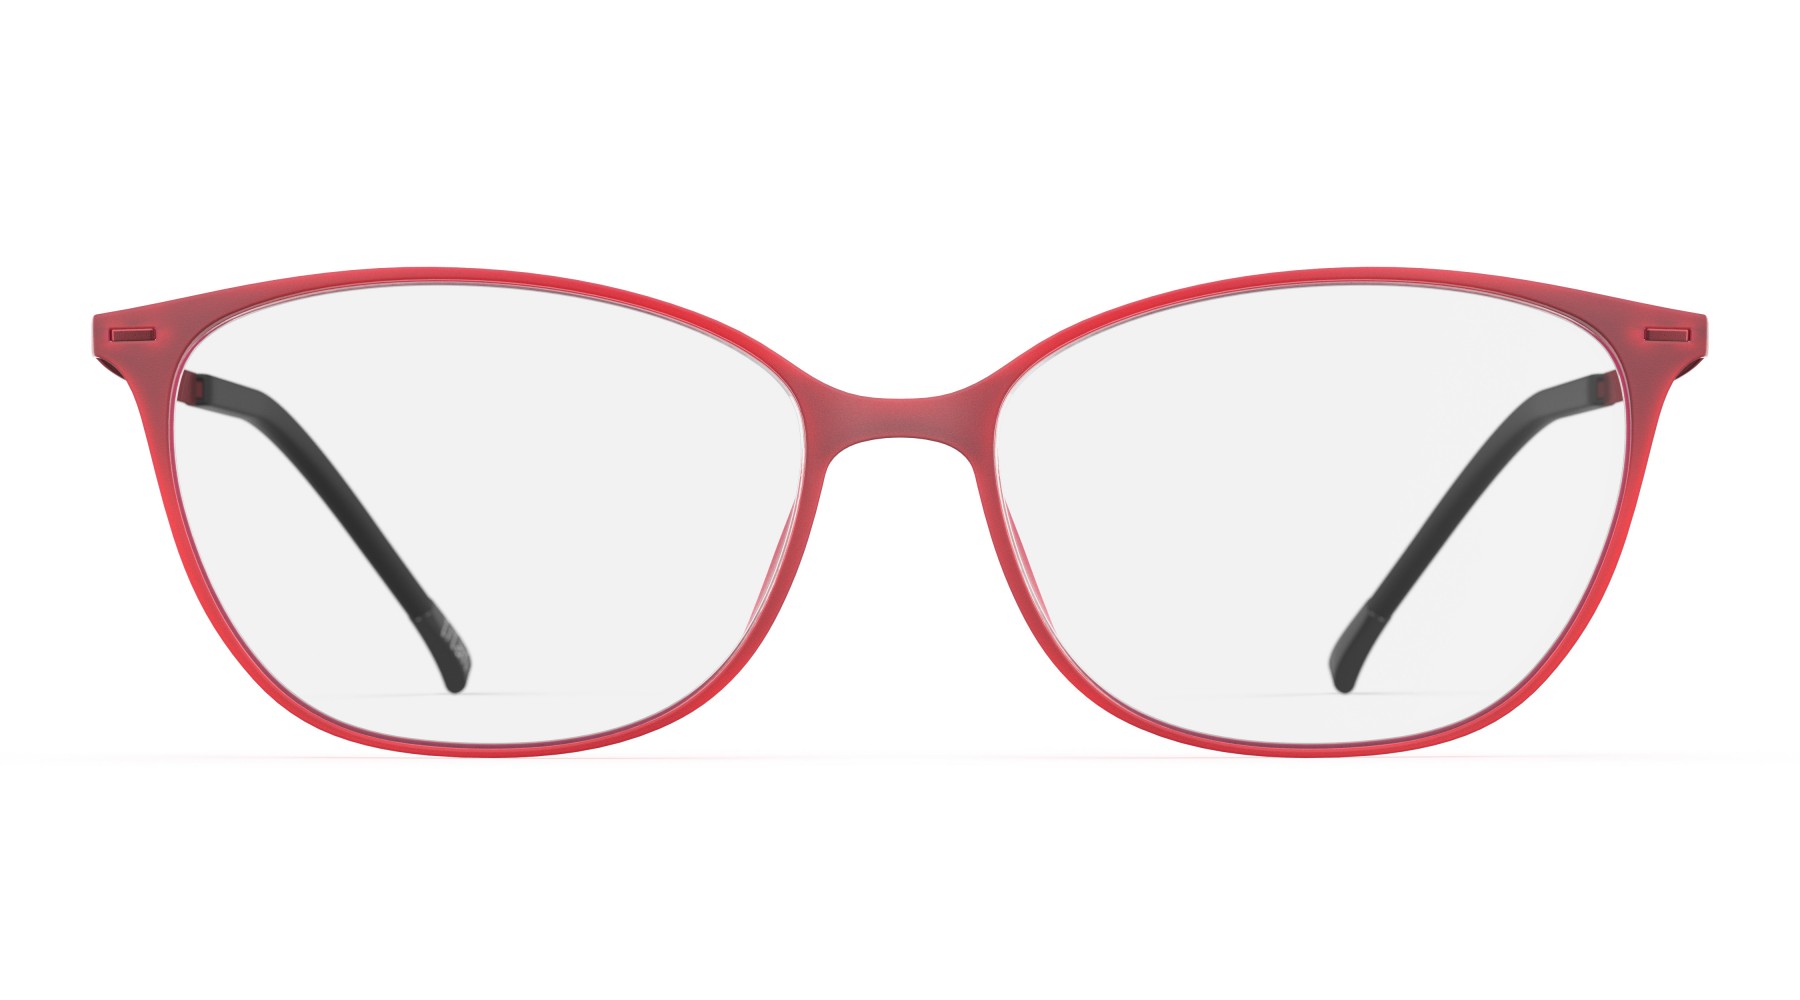 Silhouette 1590 3040 - Oculos de Grau